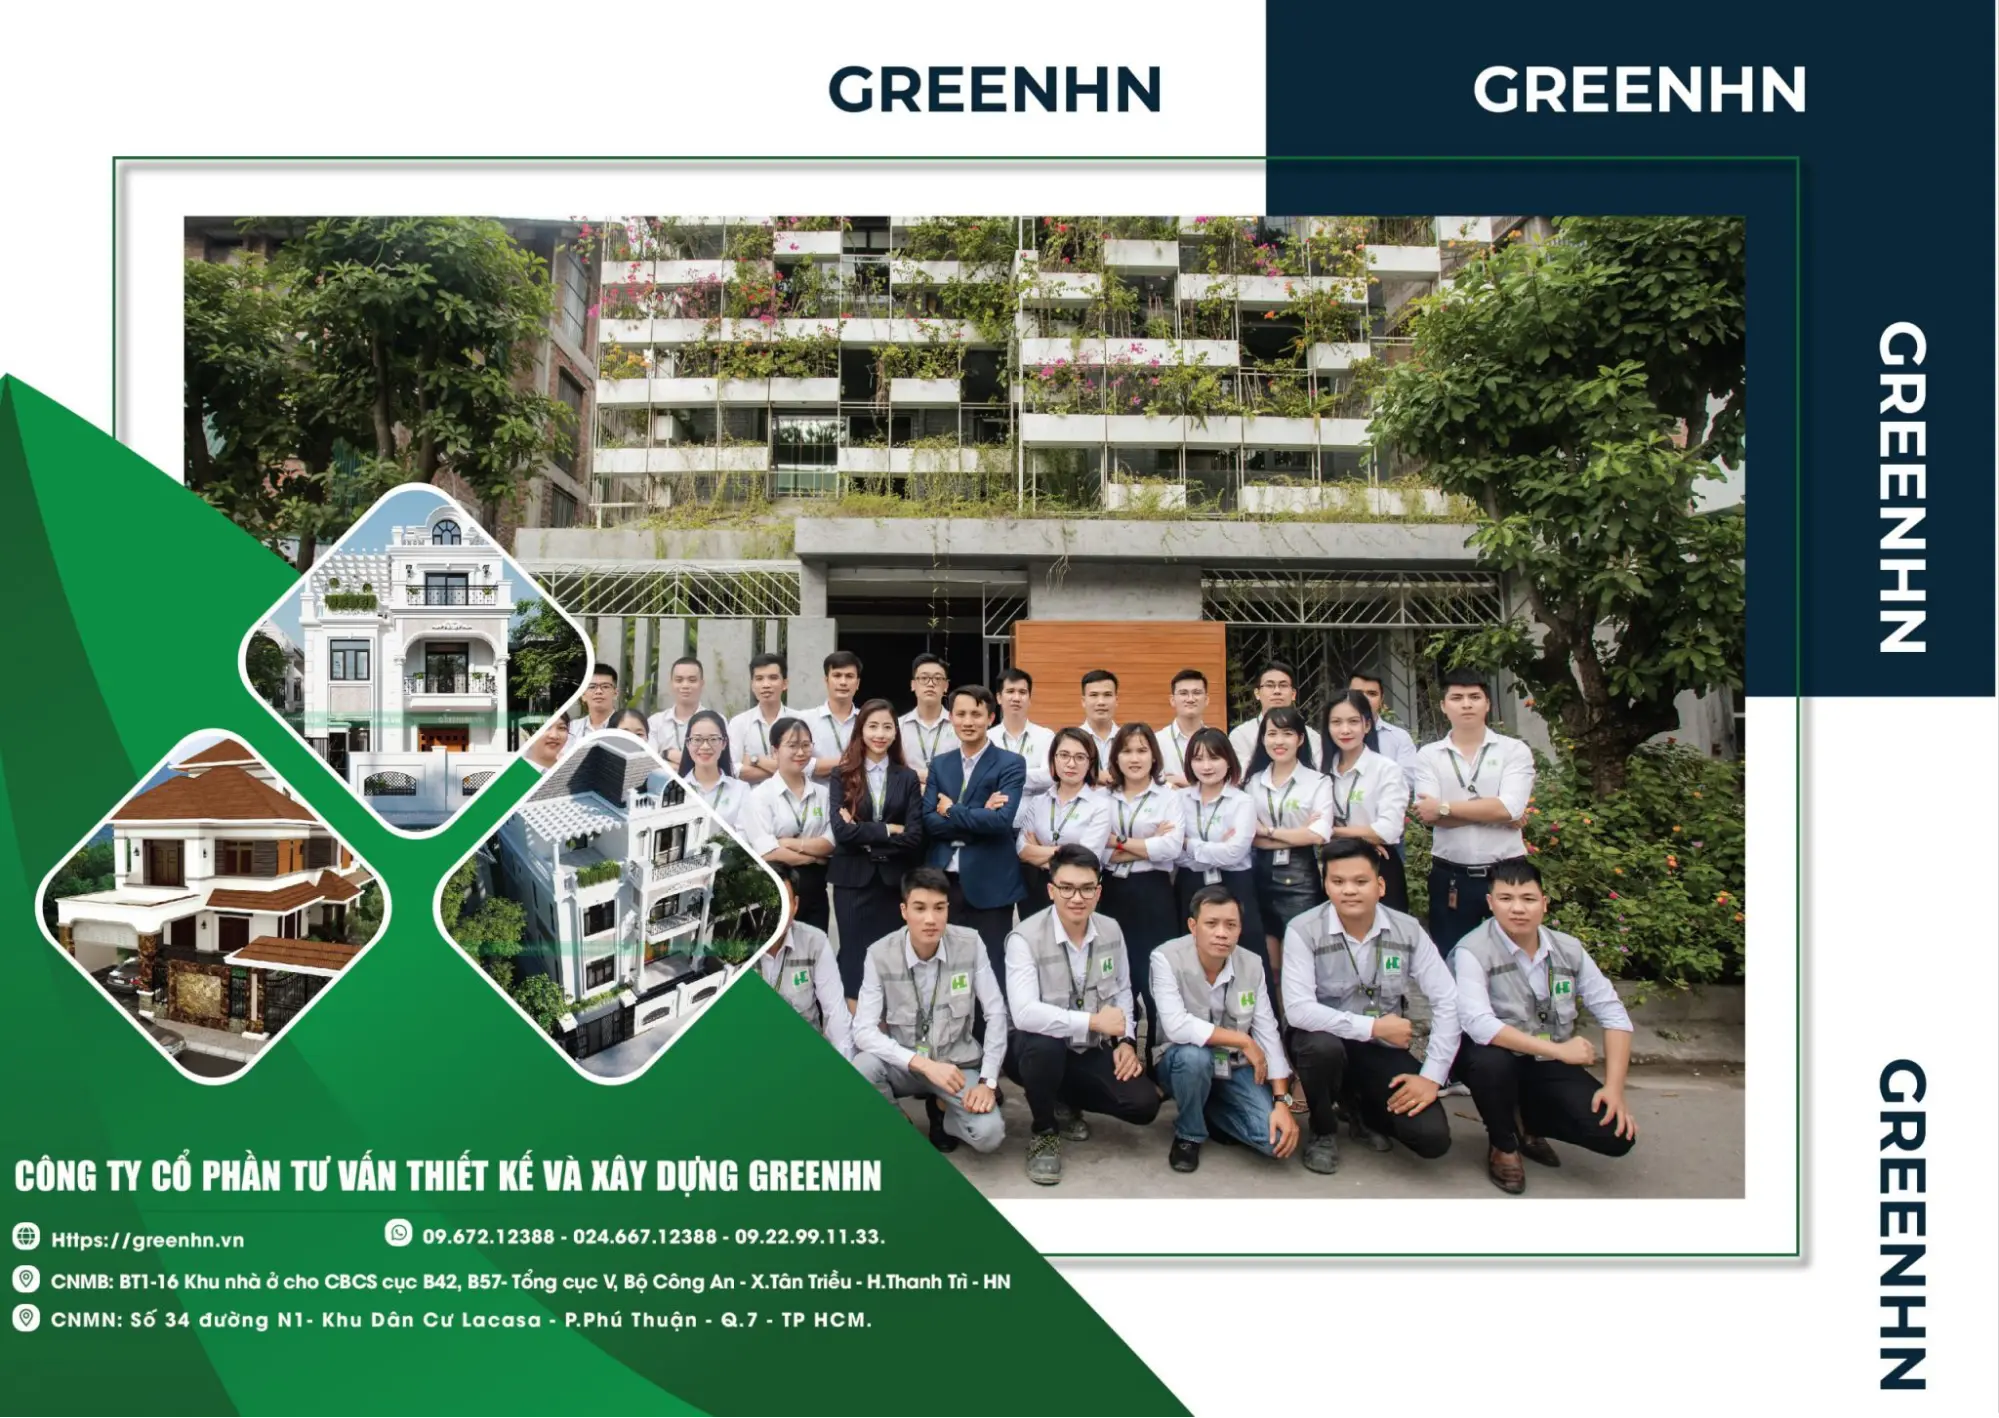 GREENHN - Công ty xây nhà trọn gói uy tín ở Hà Nội